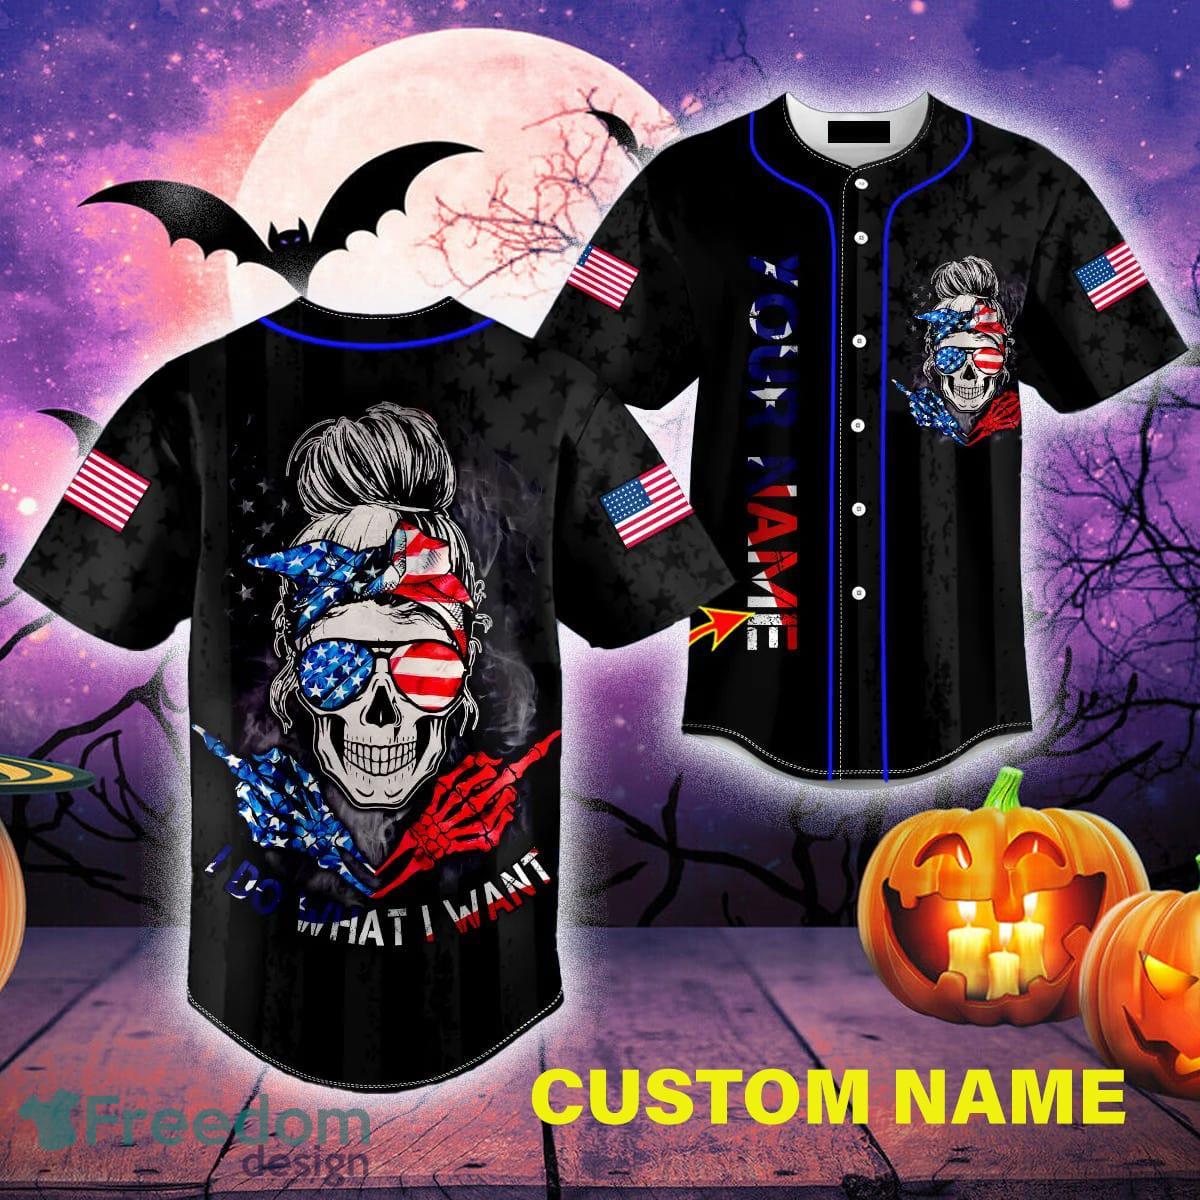 Custom Name I Do What I Want American Flag Patriotist Messy Bun Skull Baseball  Jersey For Men And Women Gift Halloween - Freedomdesign